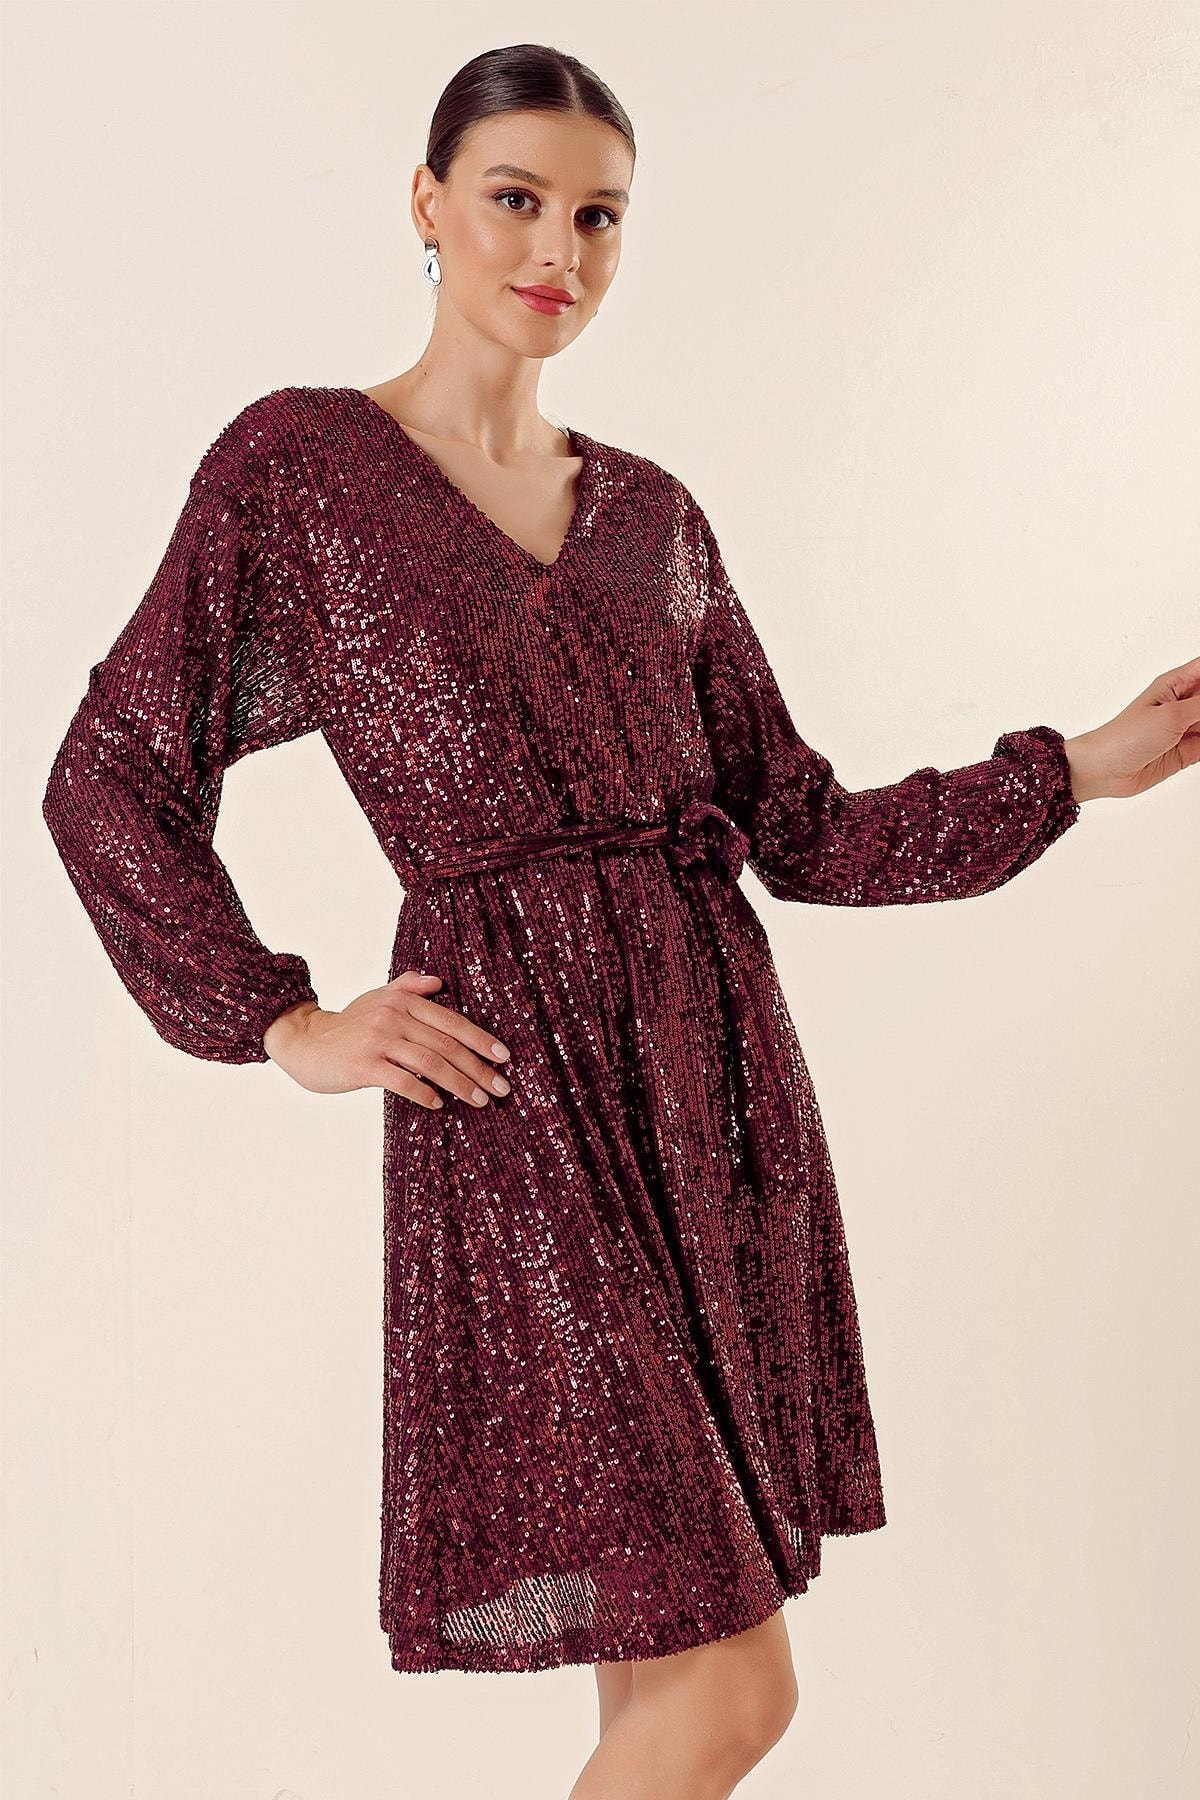 Levně By Saygı V-Neck Waist Belted Lined Stuffed Short Dress Burgundy